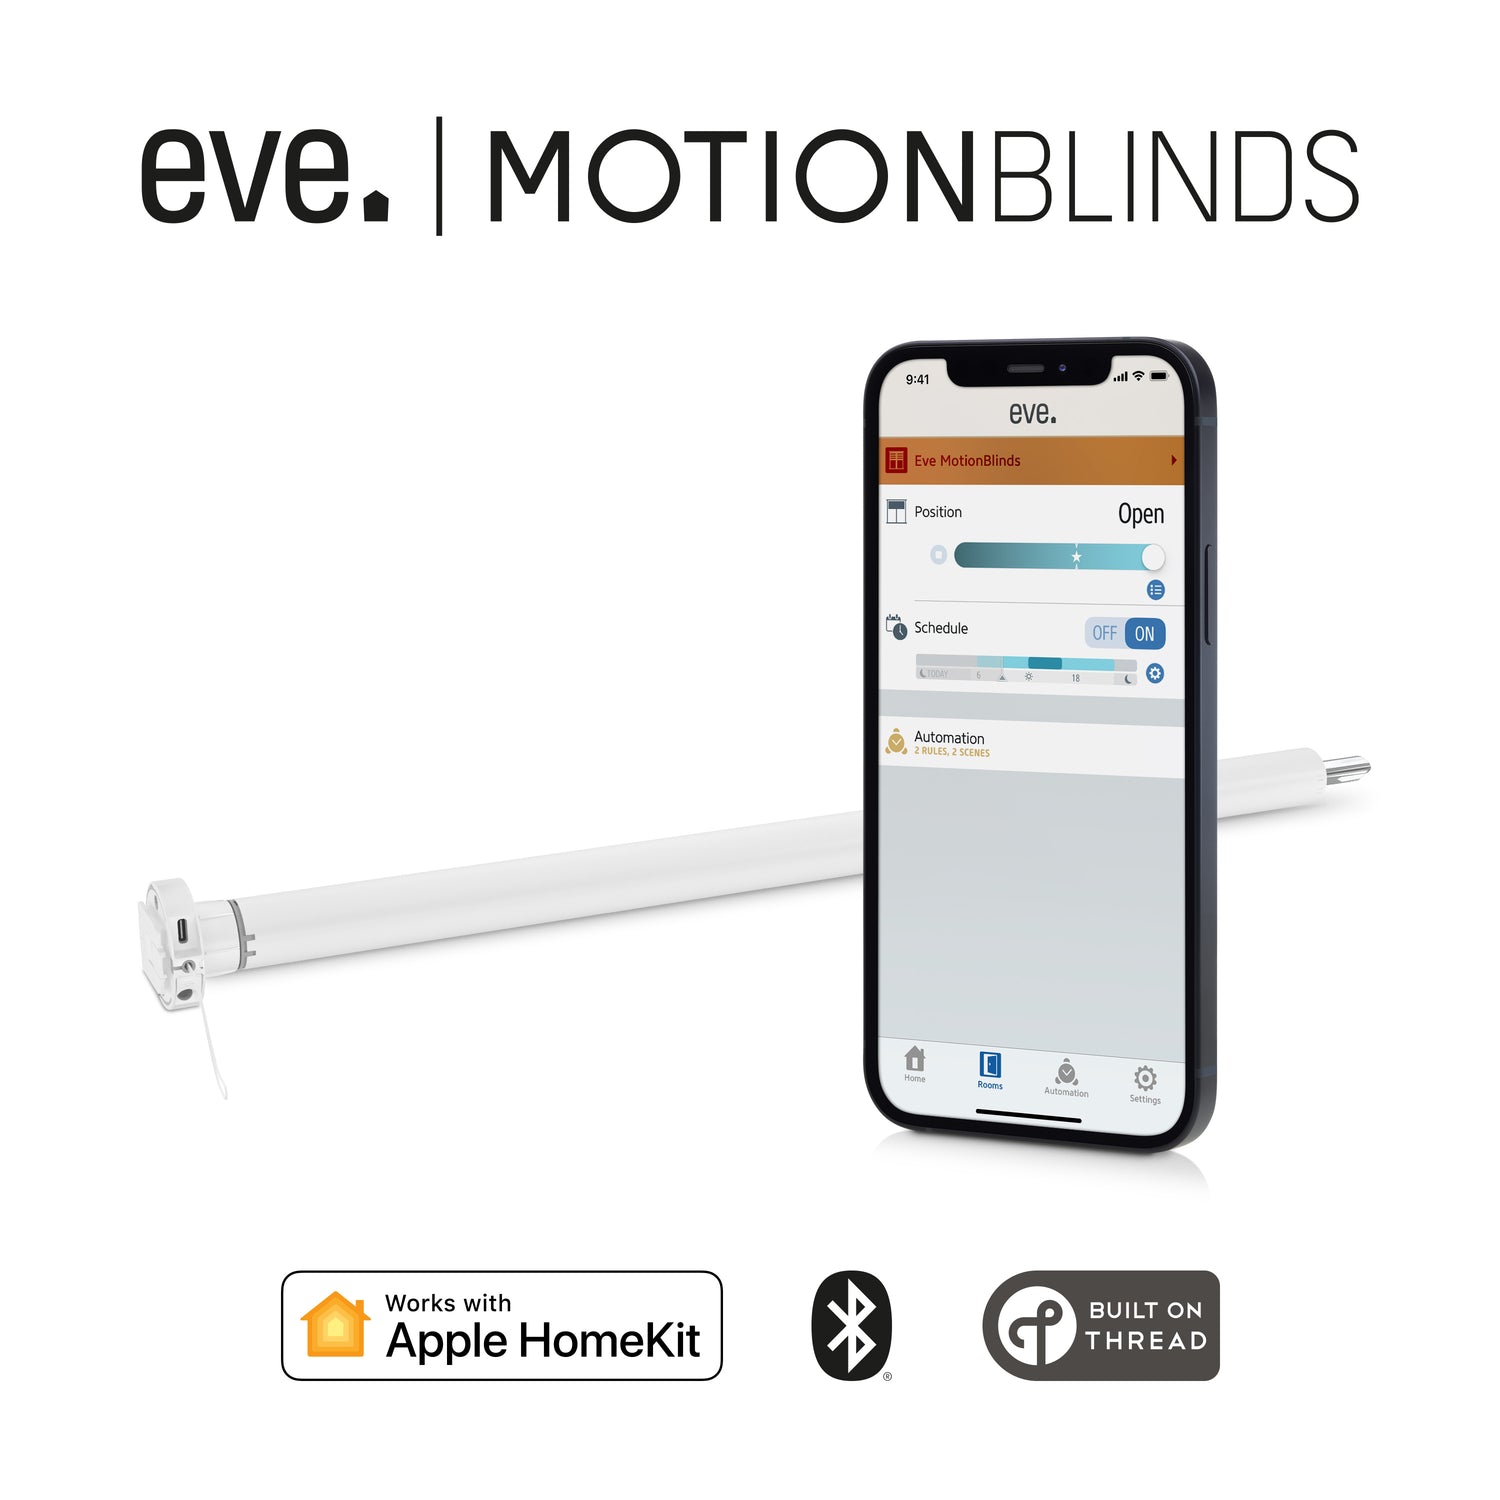 eve motion blinds